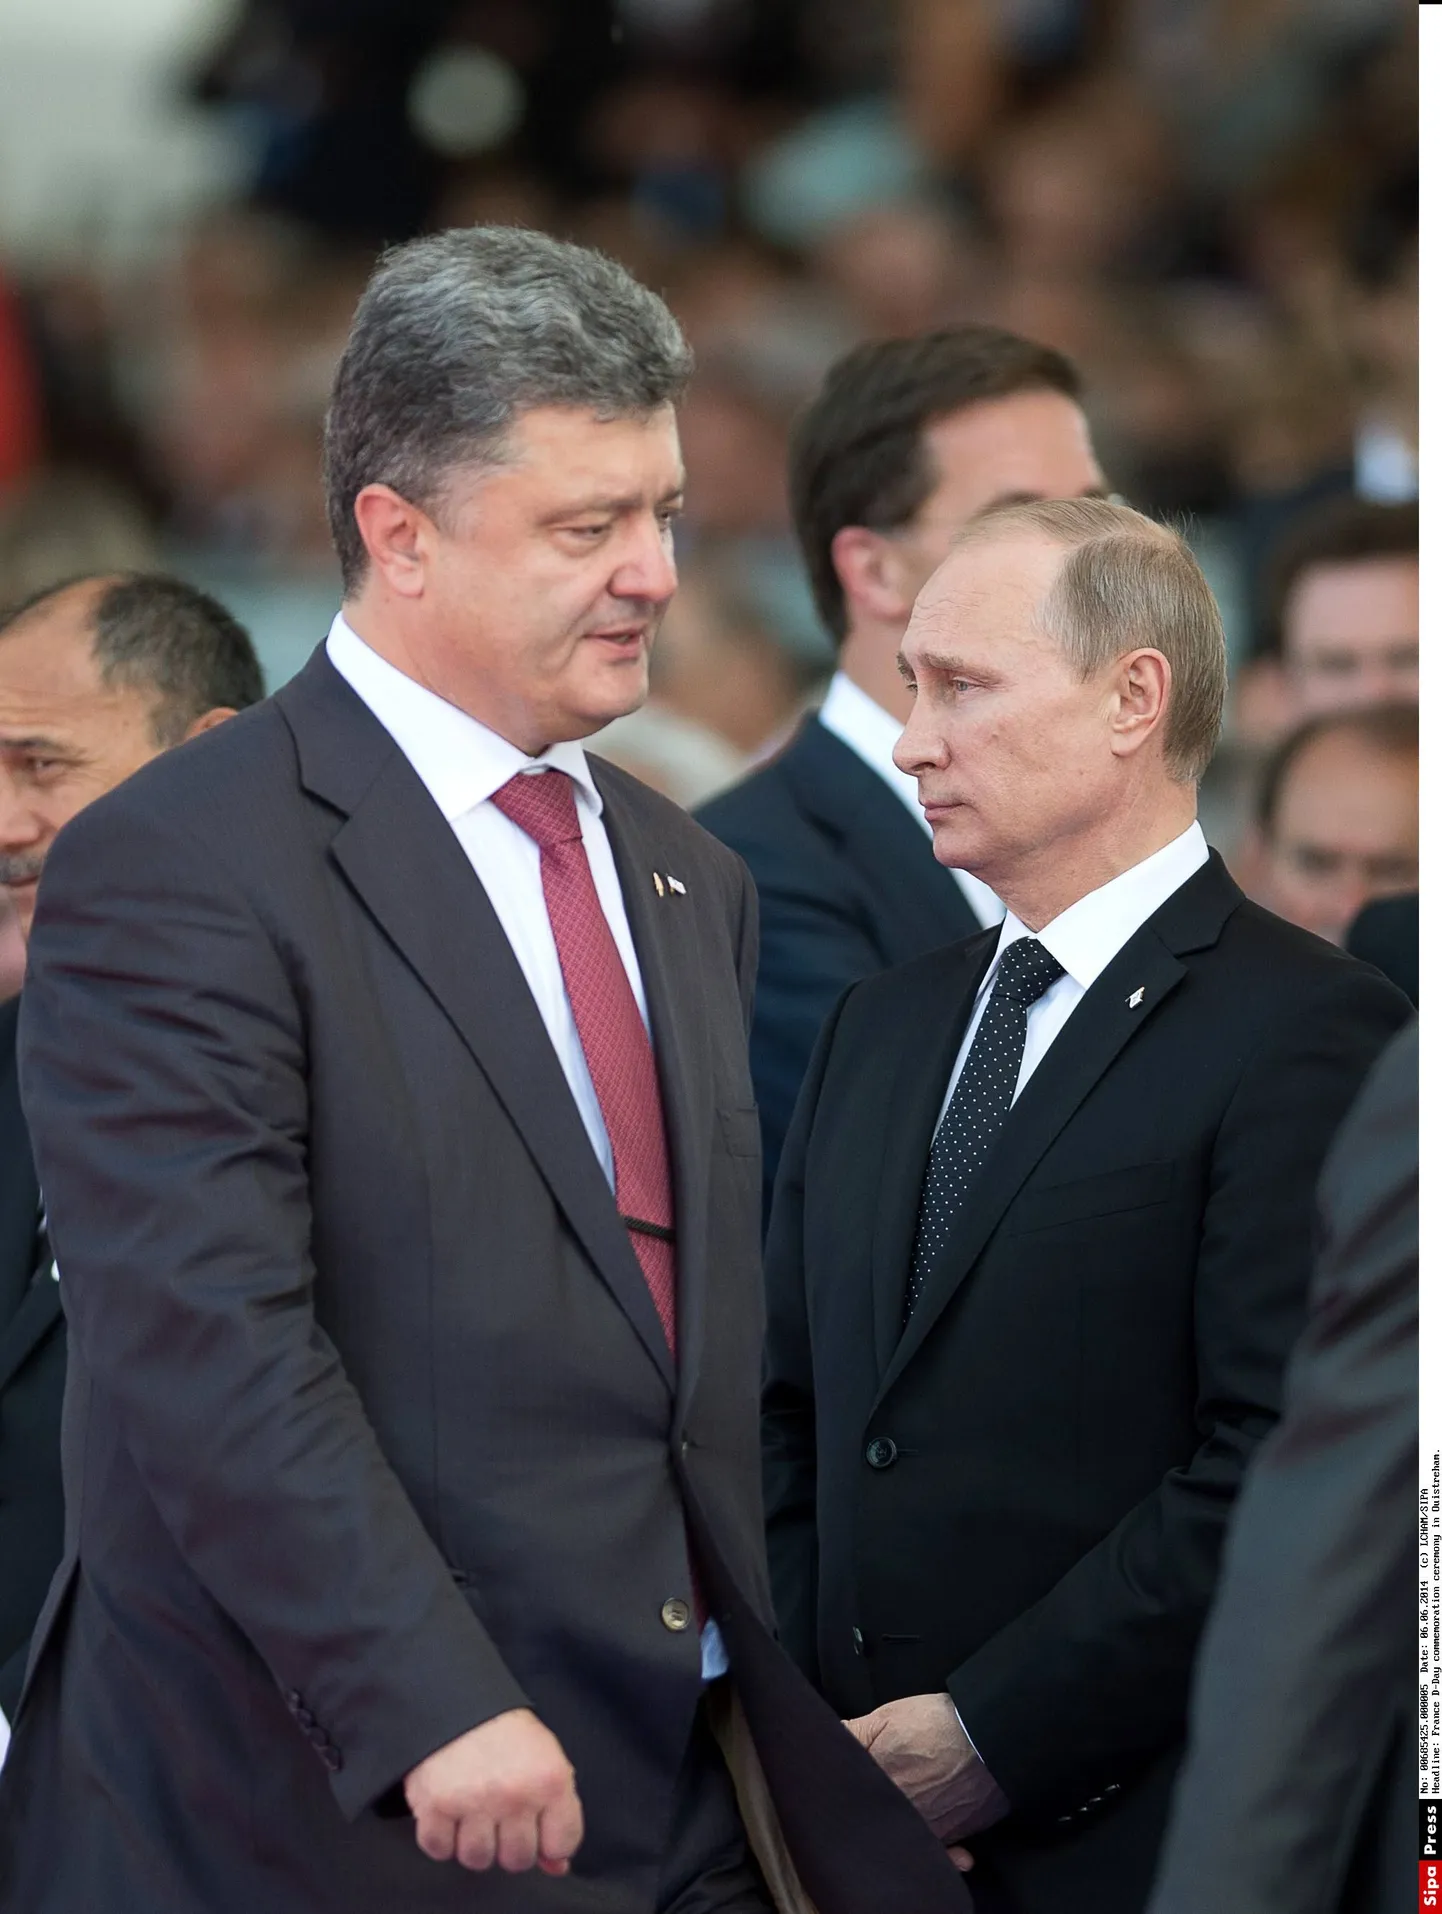 Ukraina president Petro Porošenko 
(vasakul) ja Venemaa liider Vladimir Putin 6. juunil Normandia dessandi aastapäevaga seotud üritusel.